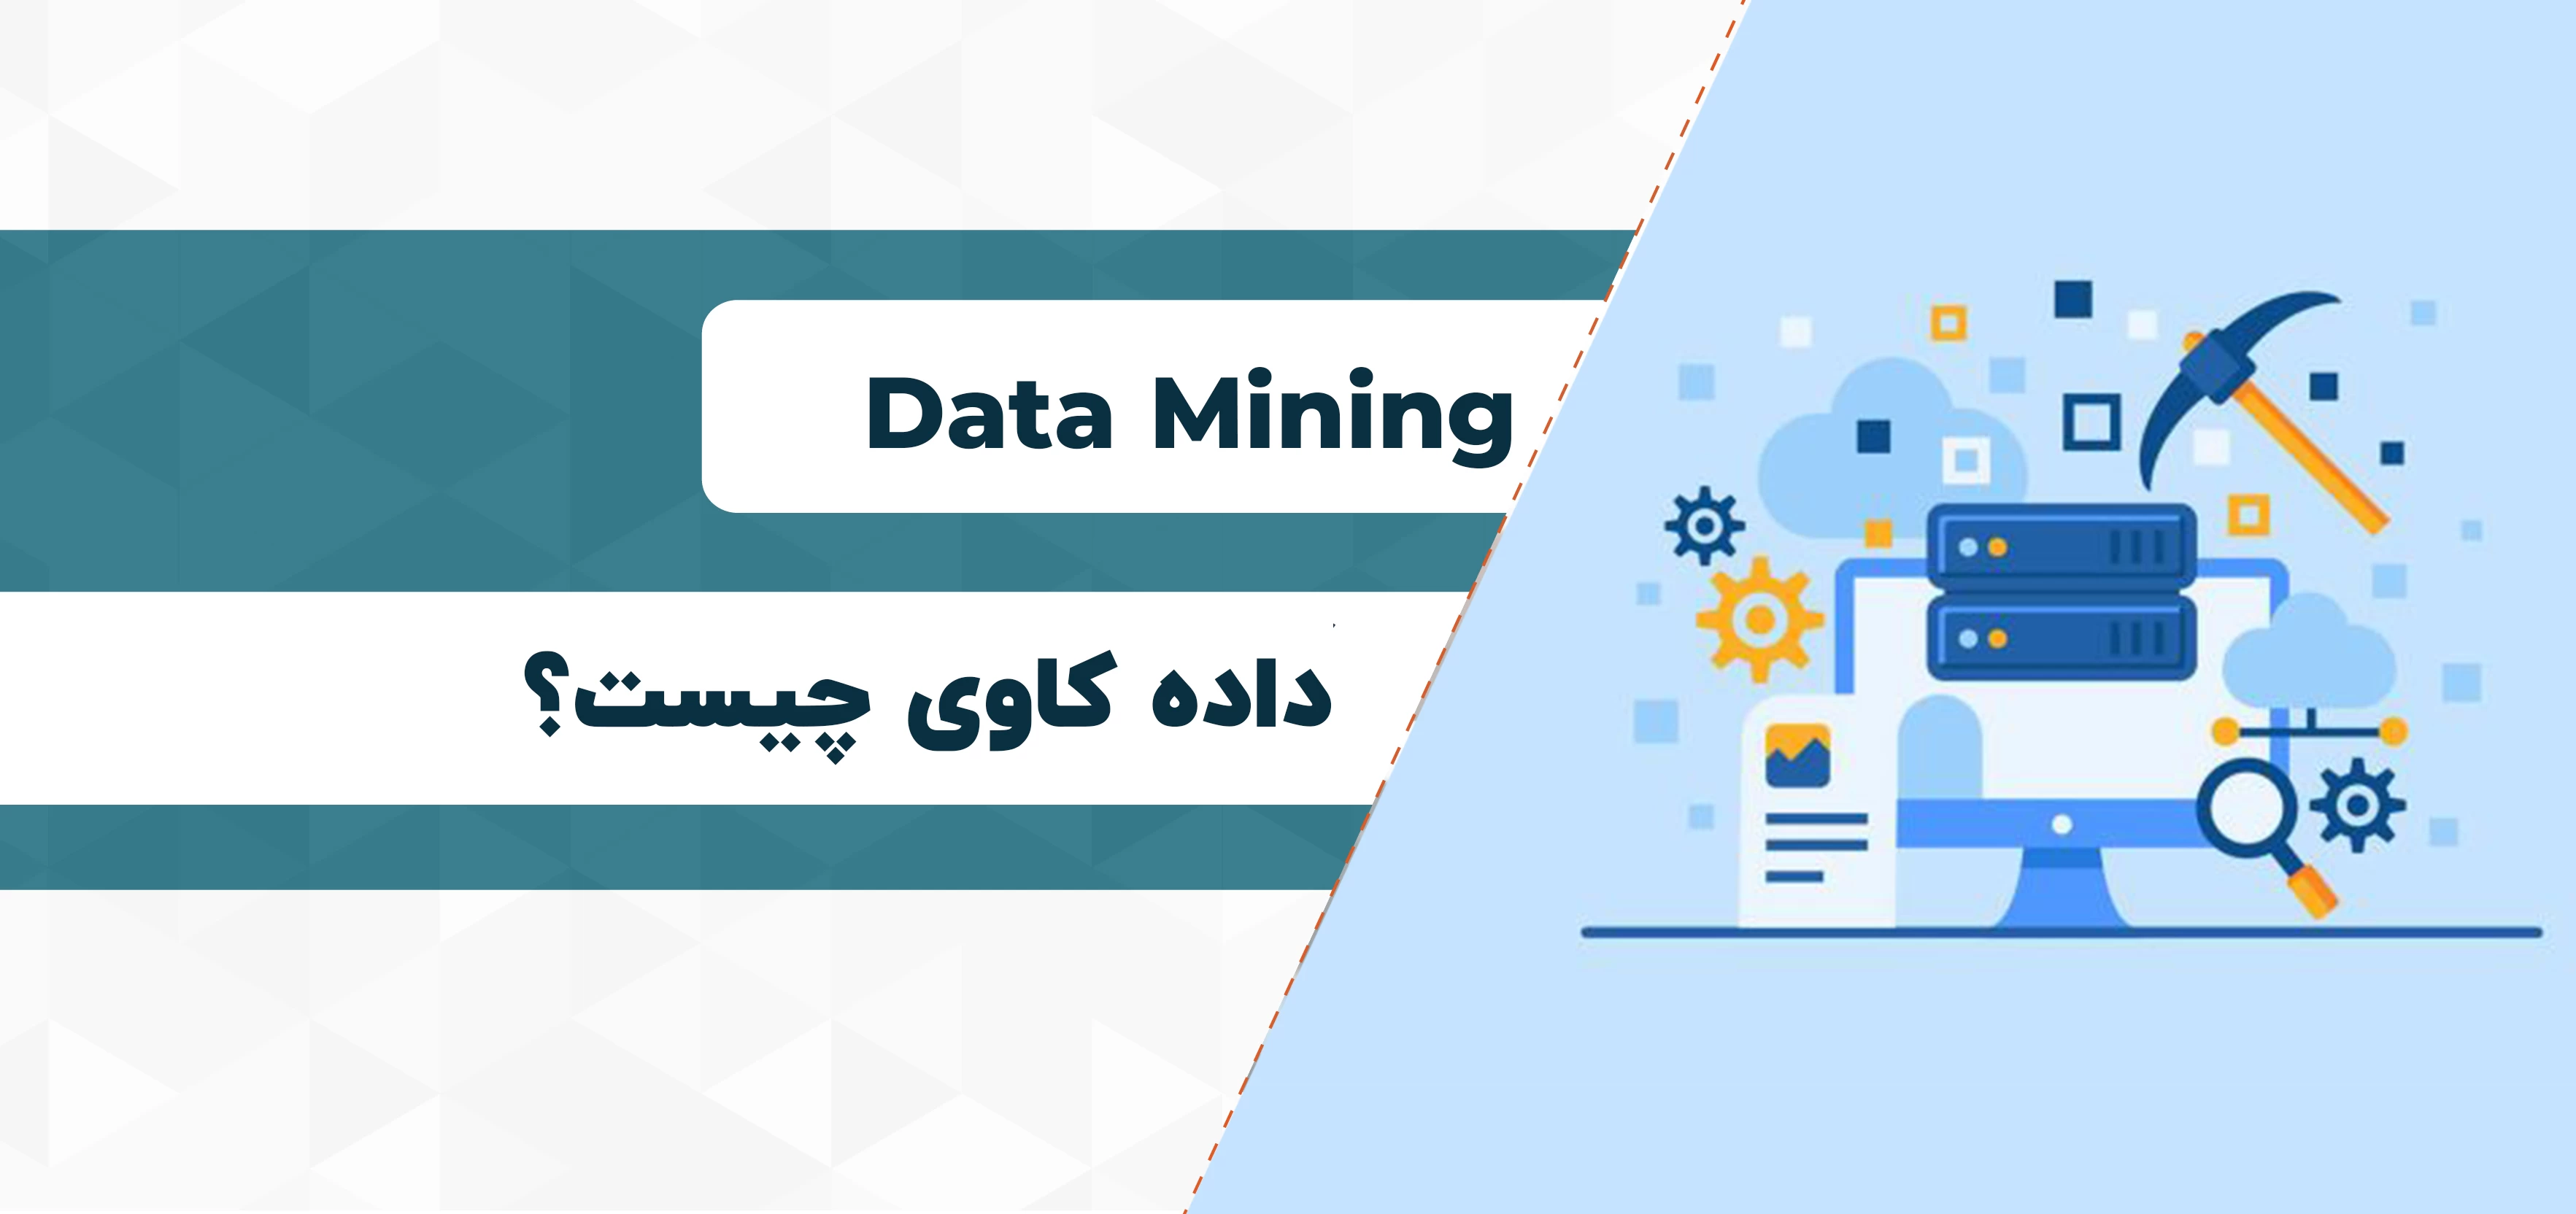 داده کاوی یا Data Mining چیست؟